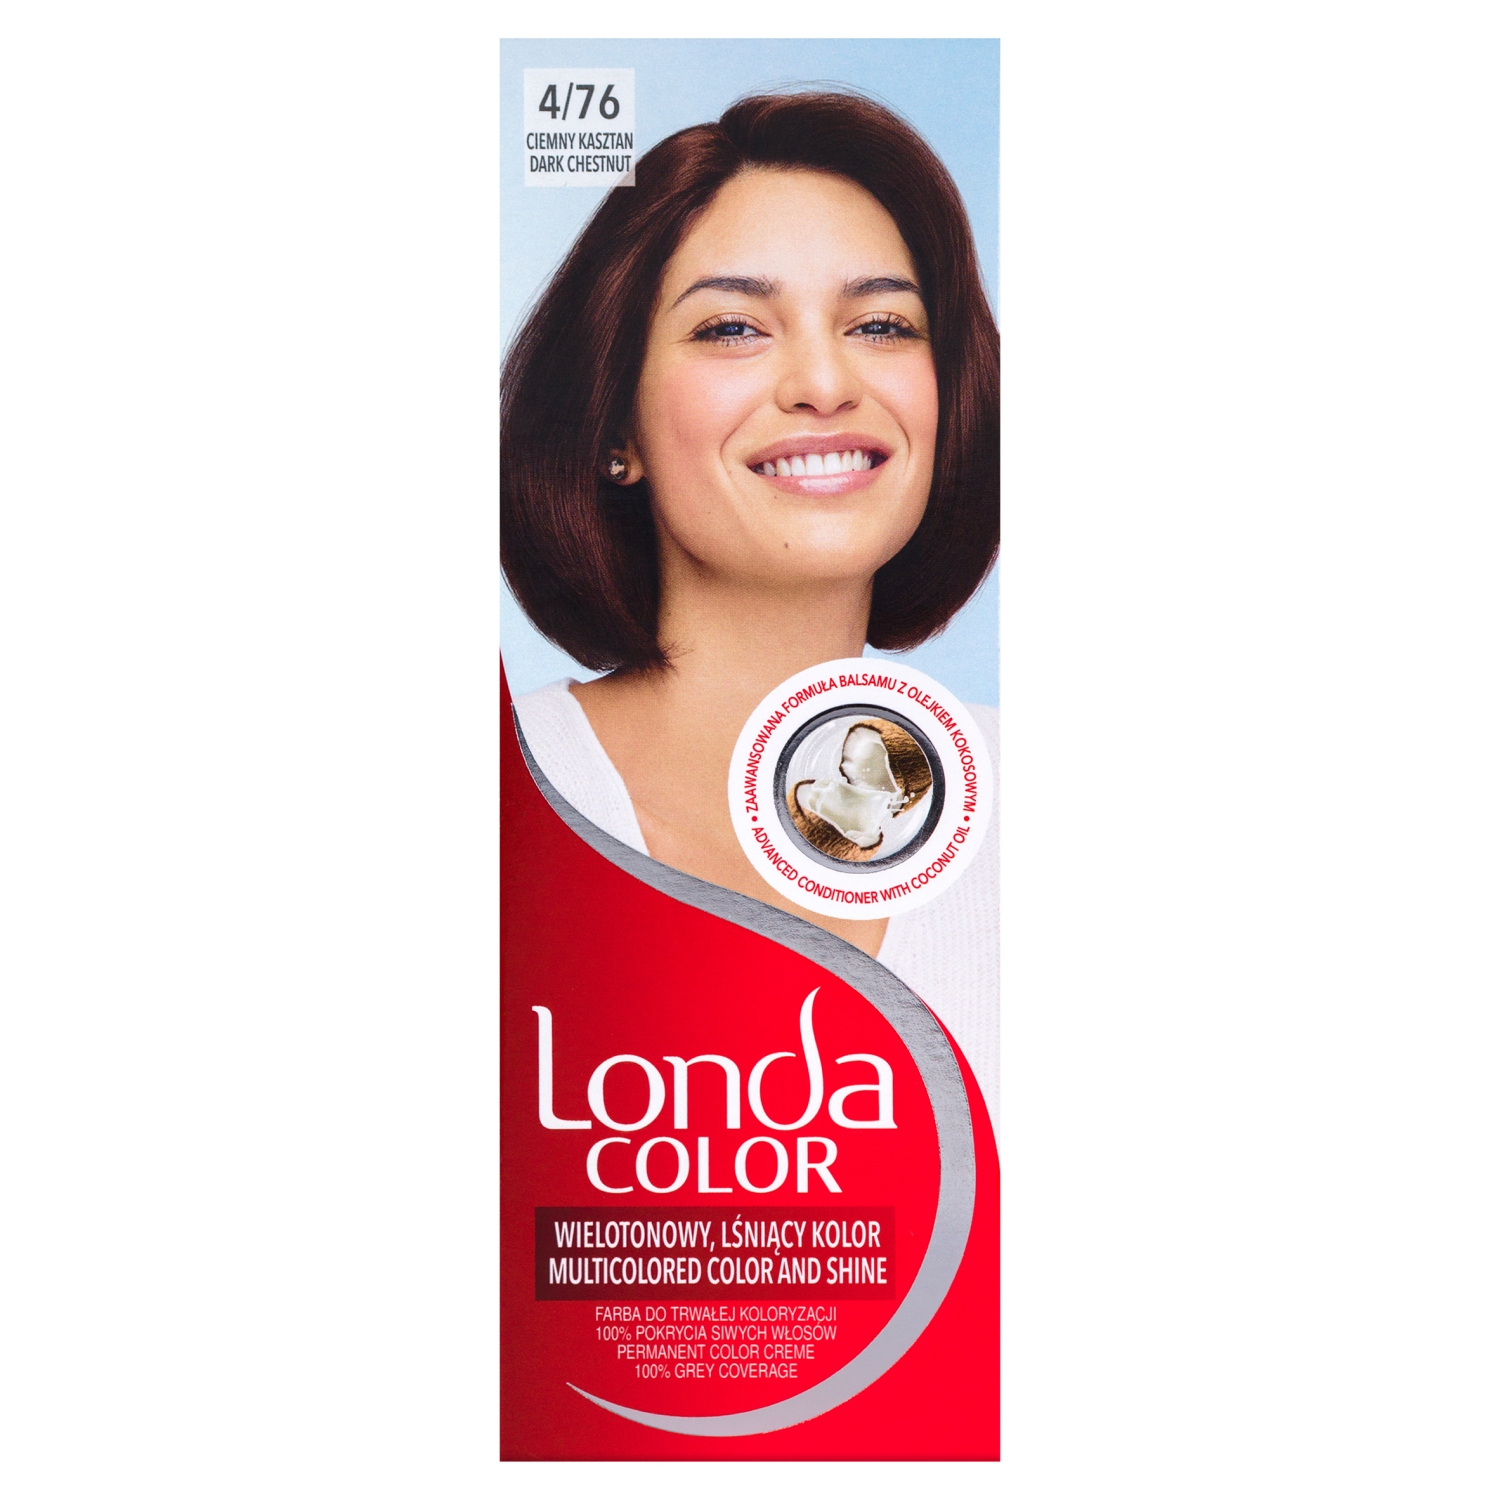 Крем-краска для волос 4/76 темно-каштановый Londa Color, 1 упаковка londa лонда стойкая крем краска 10 8